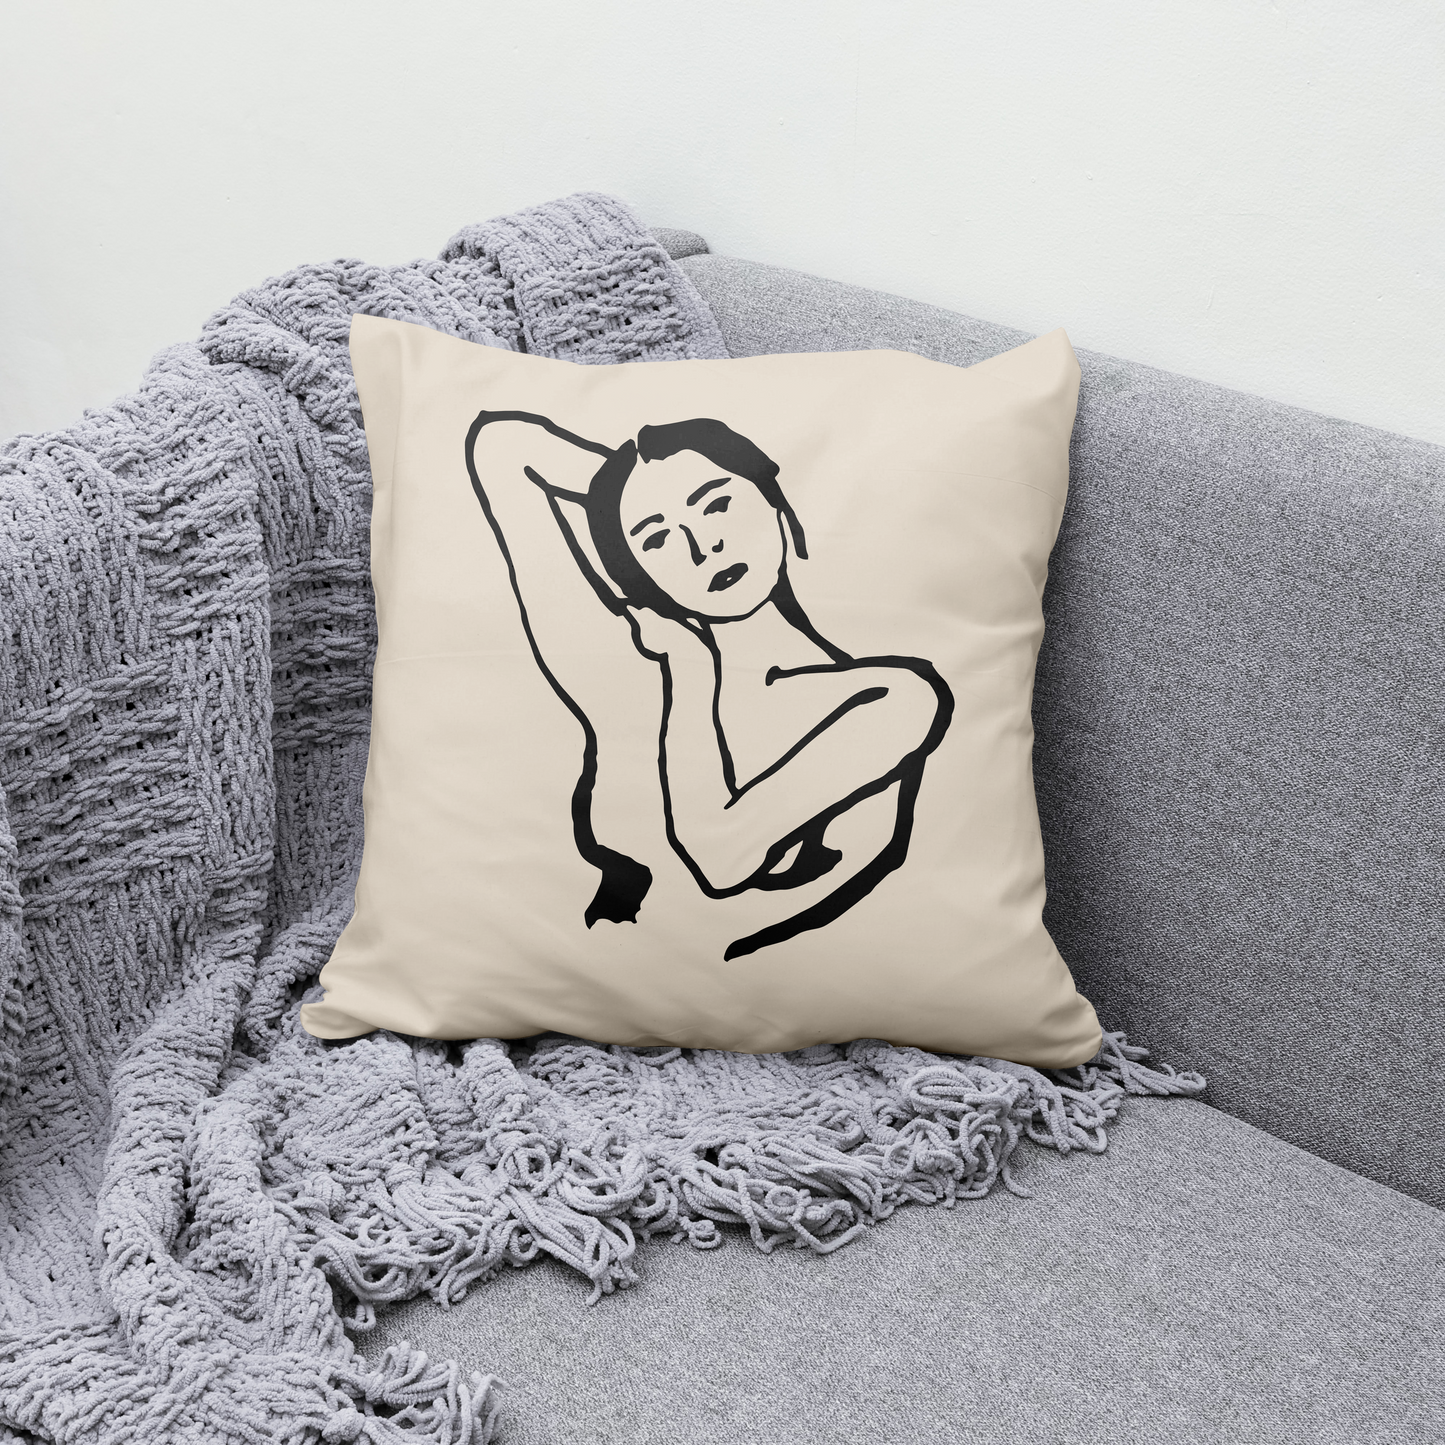 Line Art Woman Throw Pillow